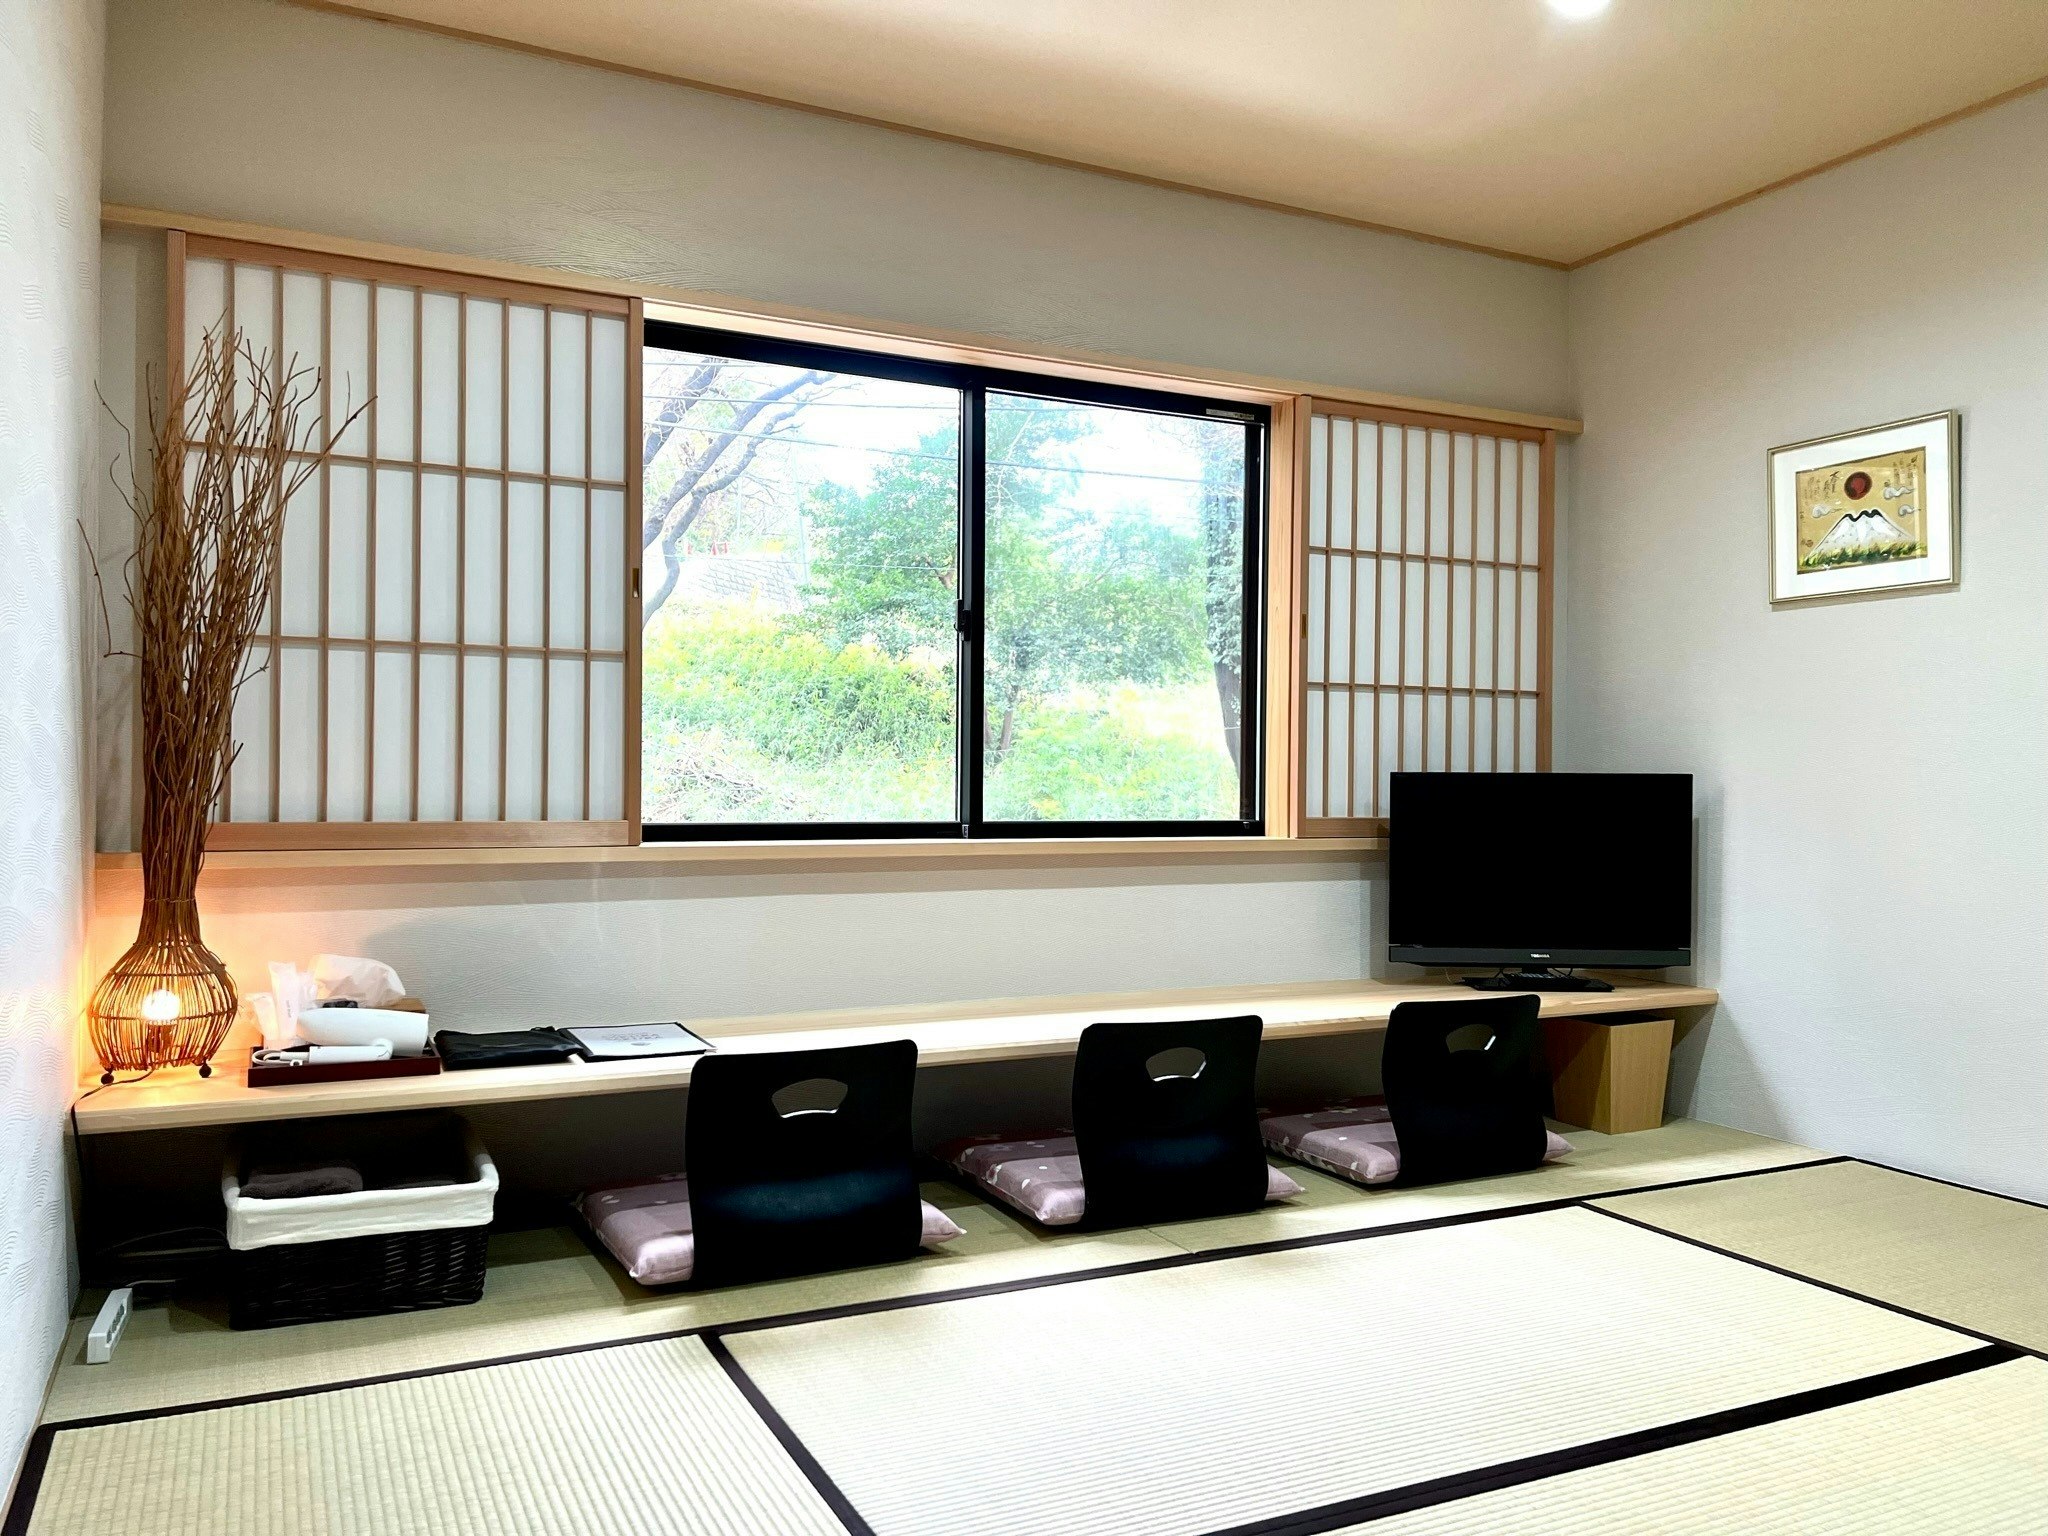 和 室『 自然と日本の和を感じるお部屋 』